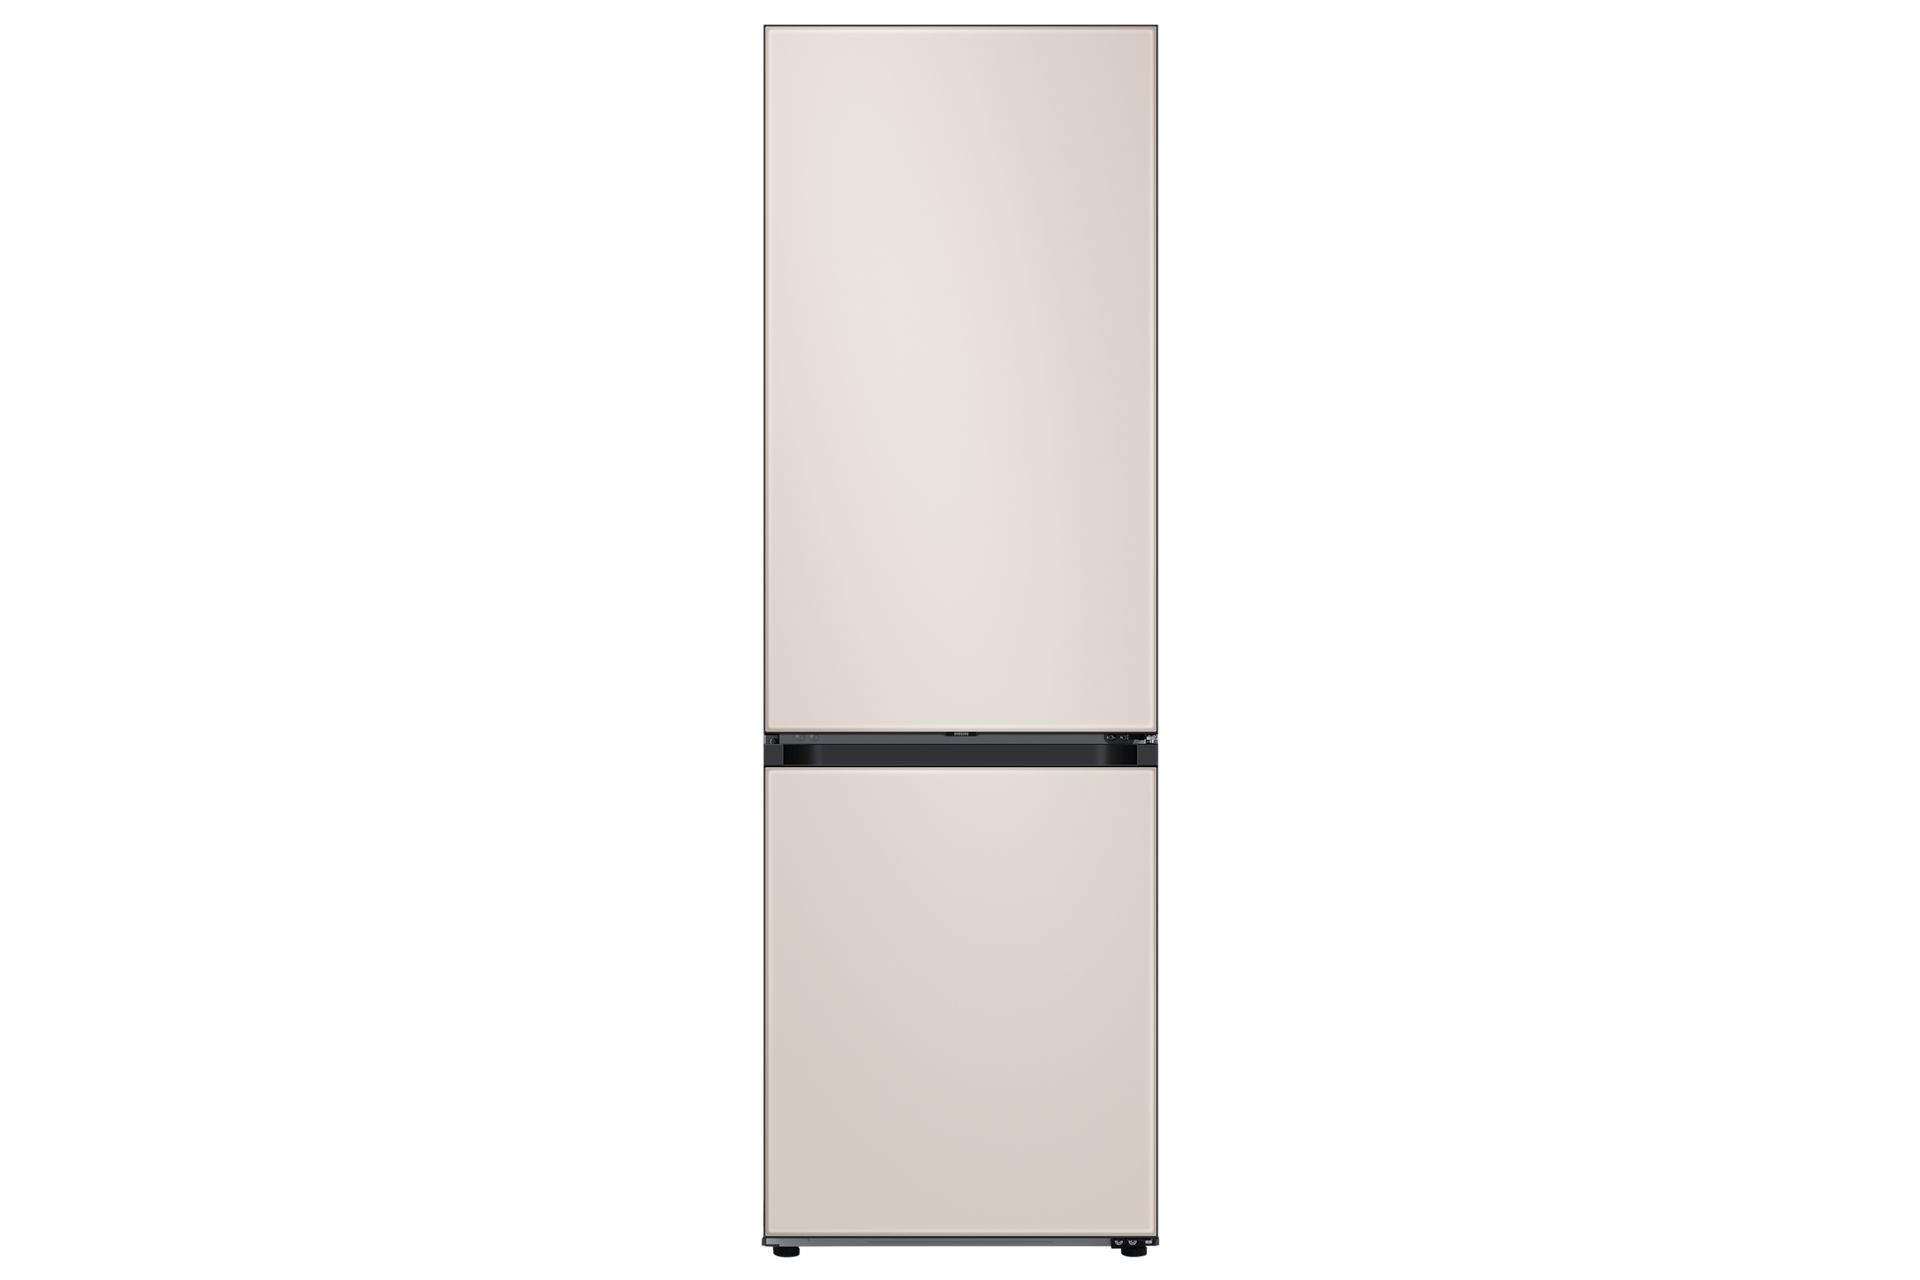 Réfrigérateur congélateur SAMSUNG 344L combiné L. 59,5 cm